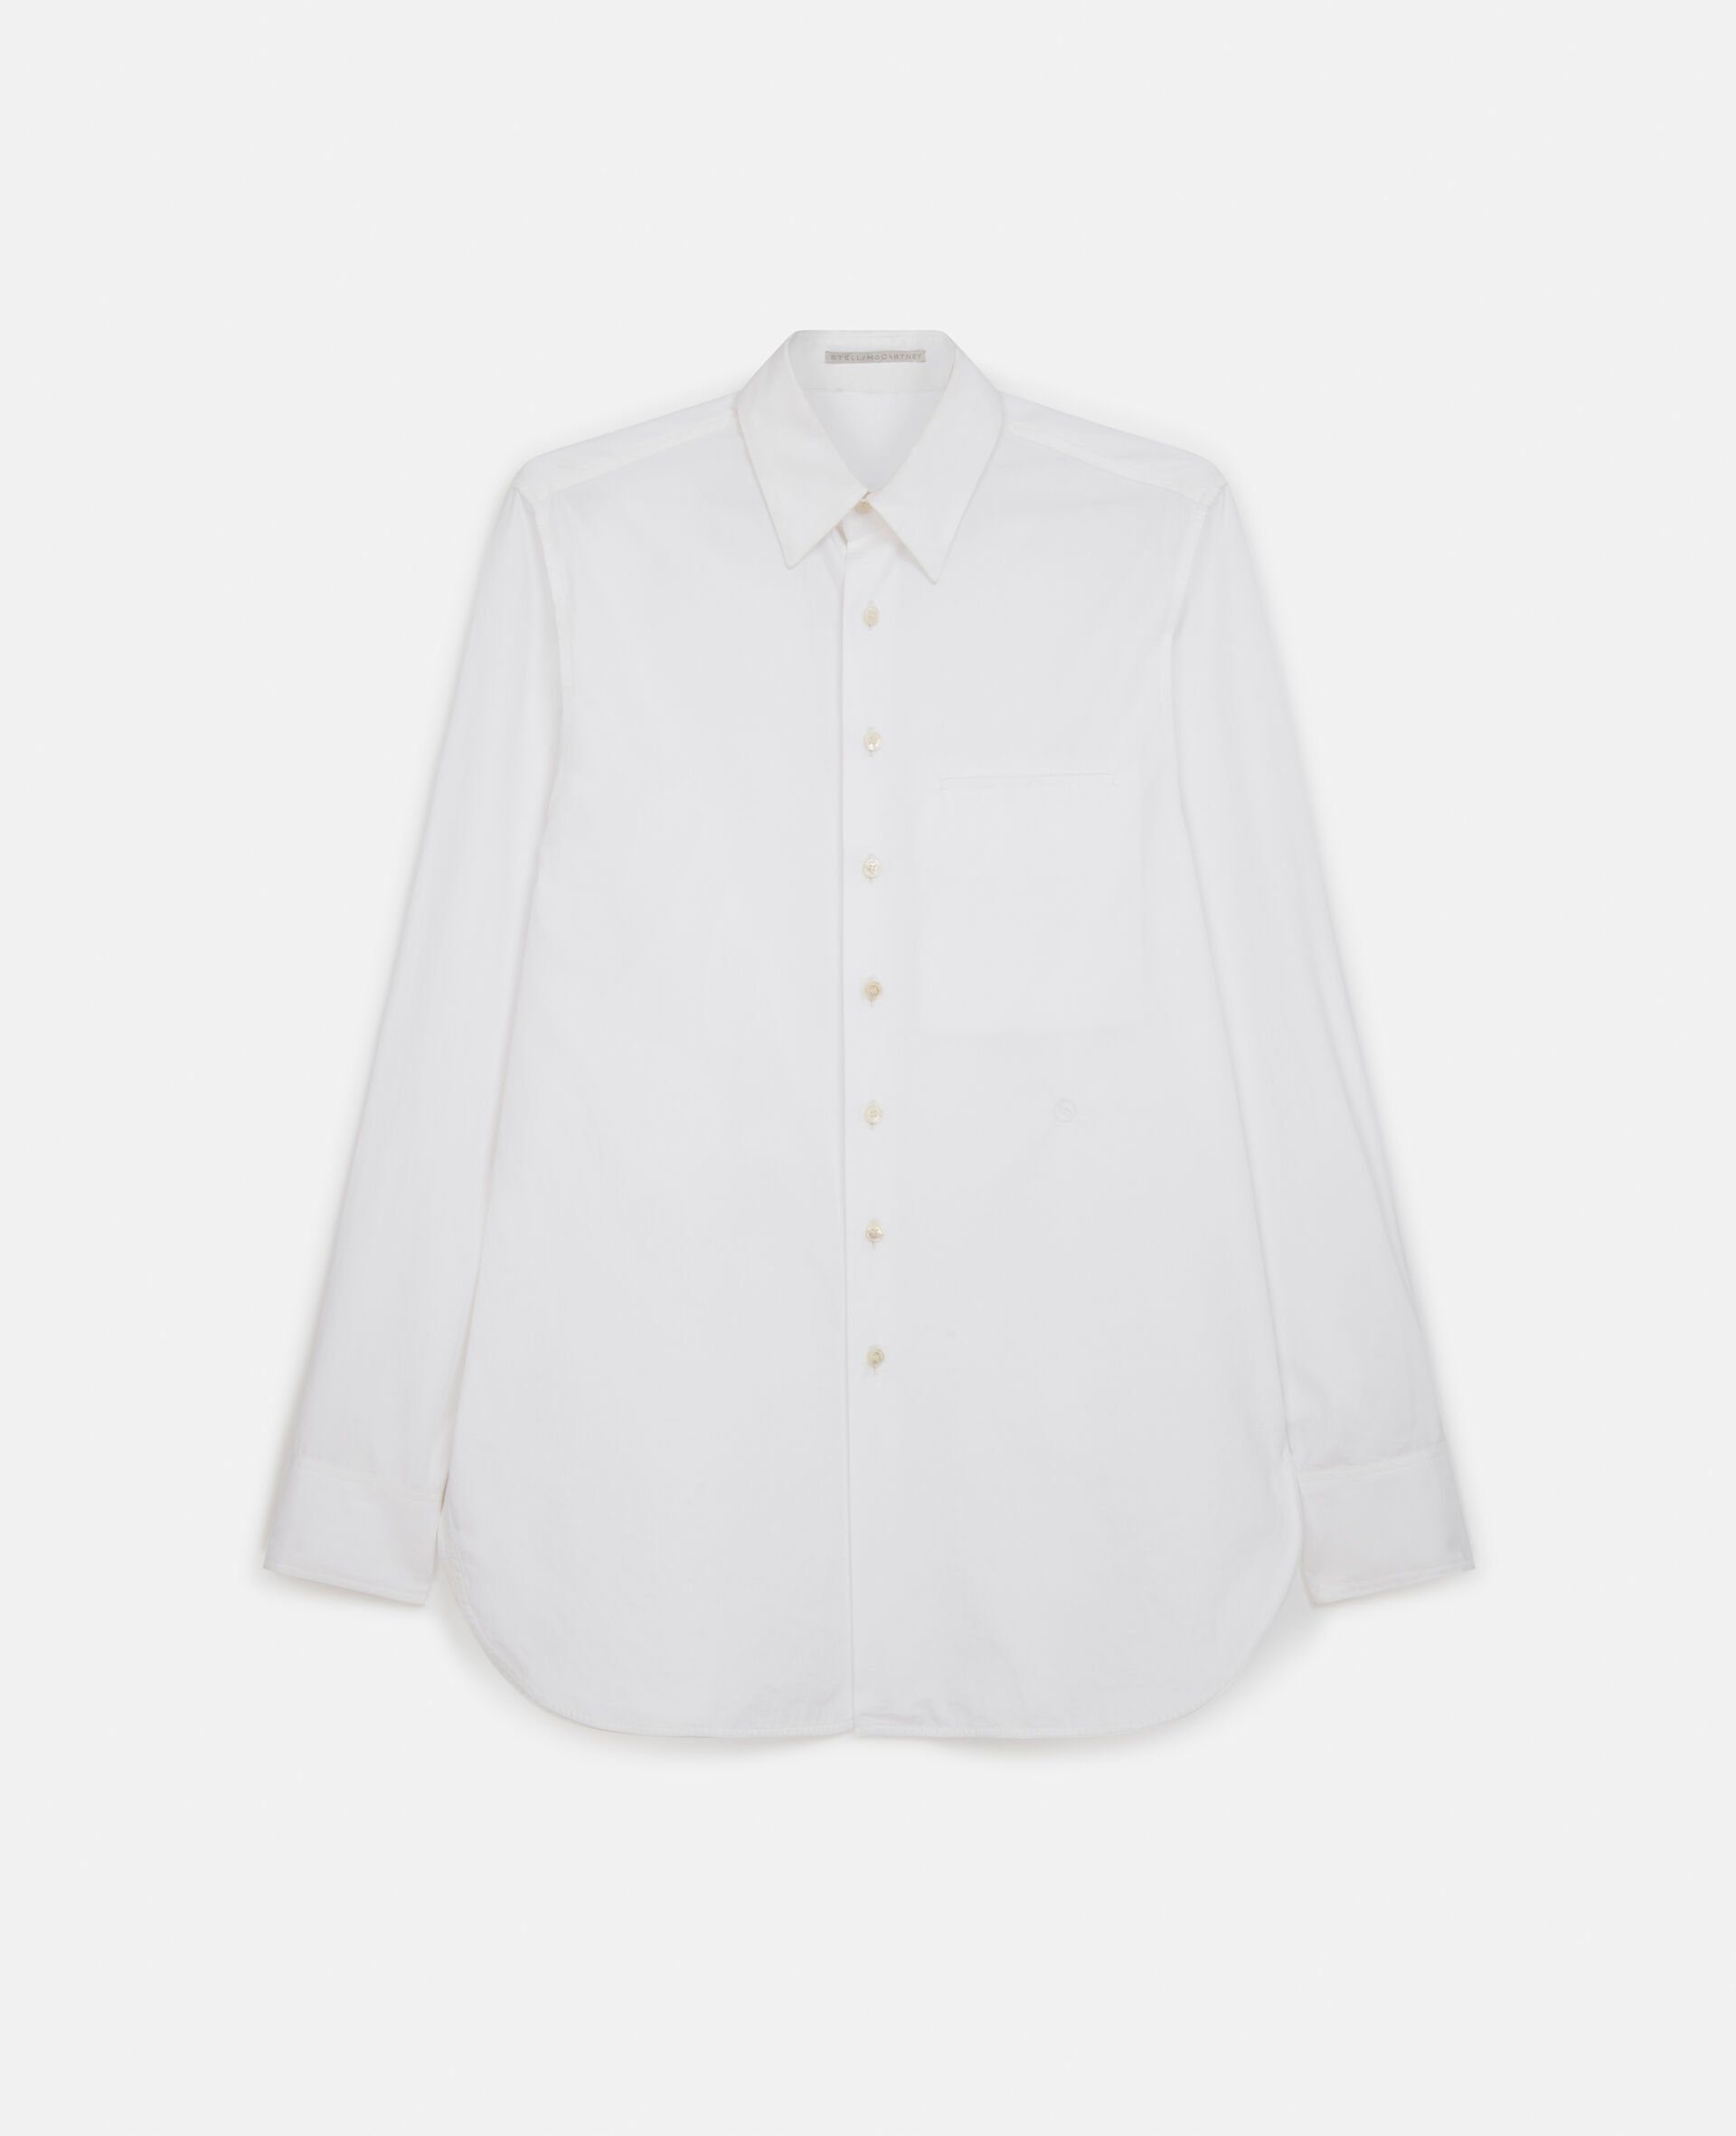 Boyfriend Fit Shirt-White-medium